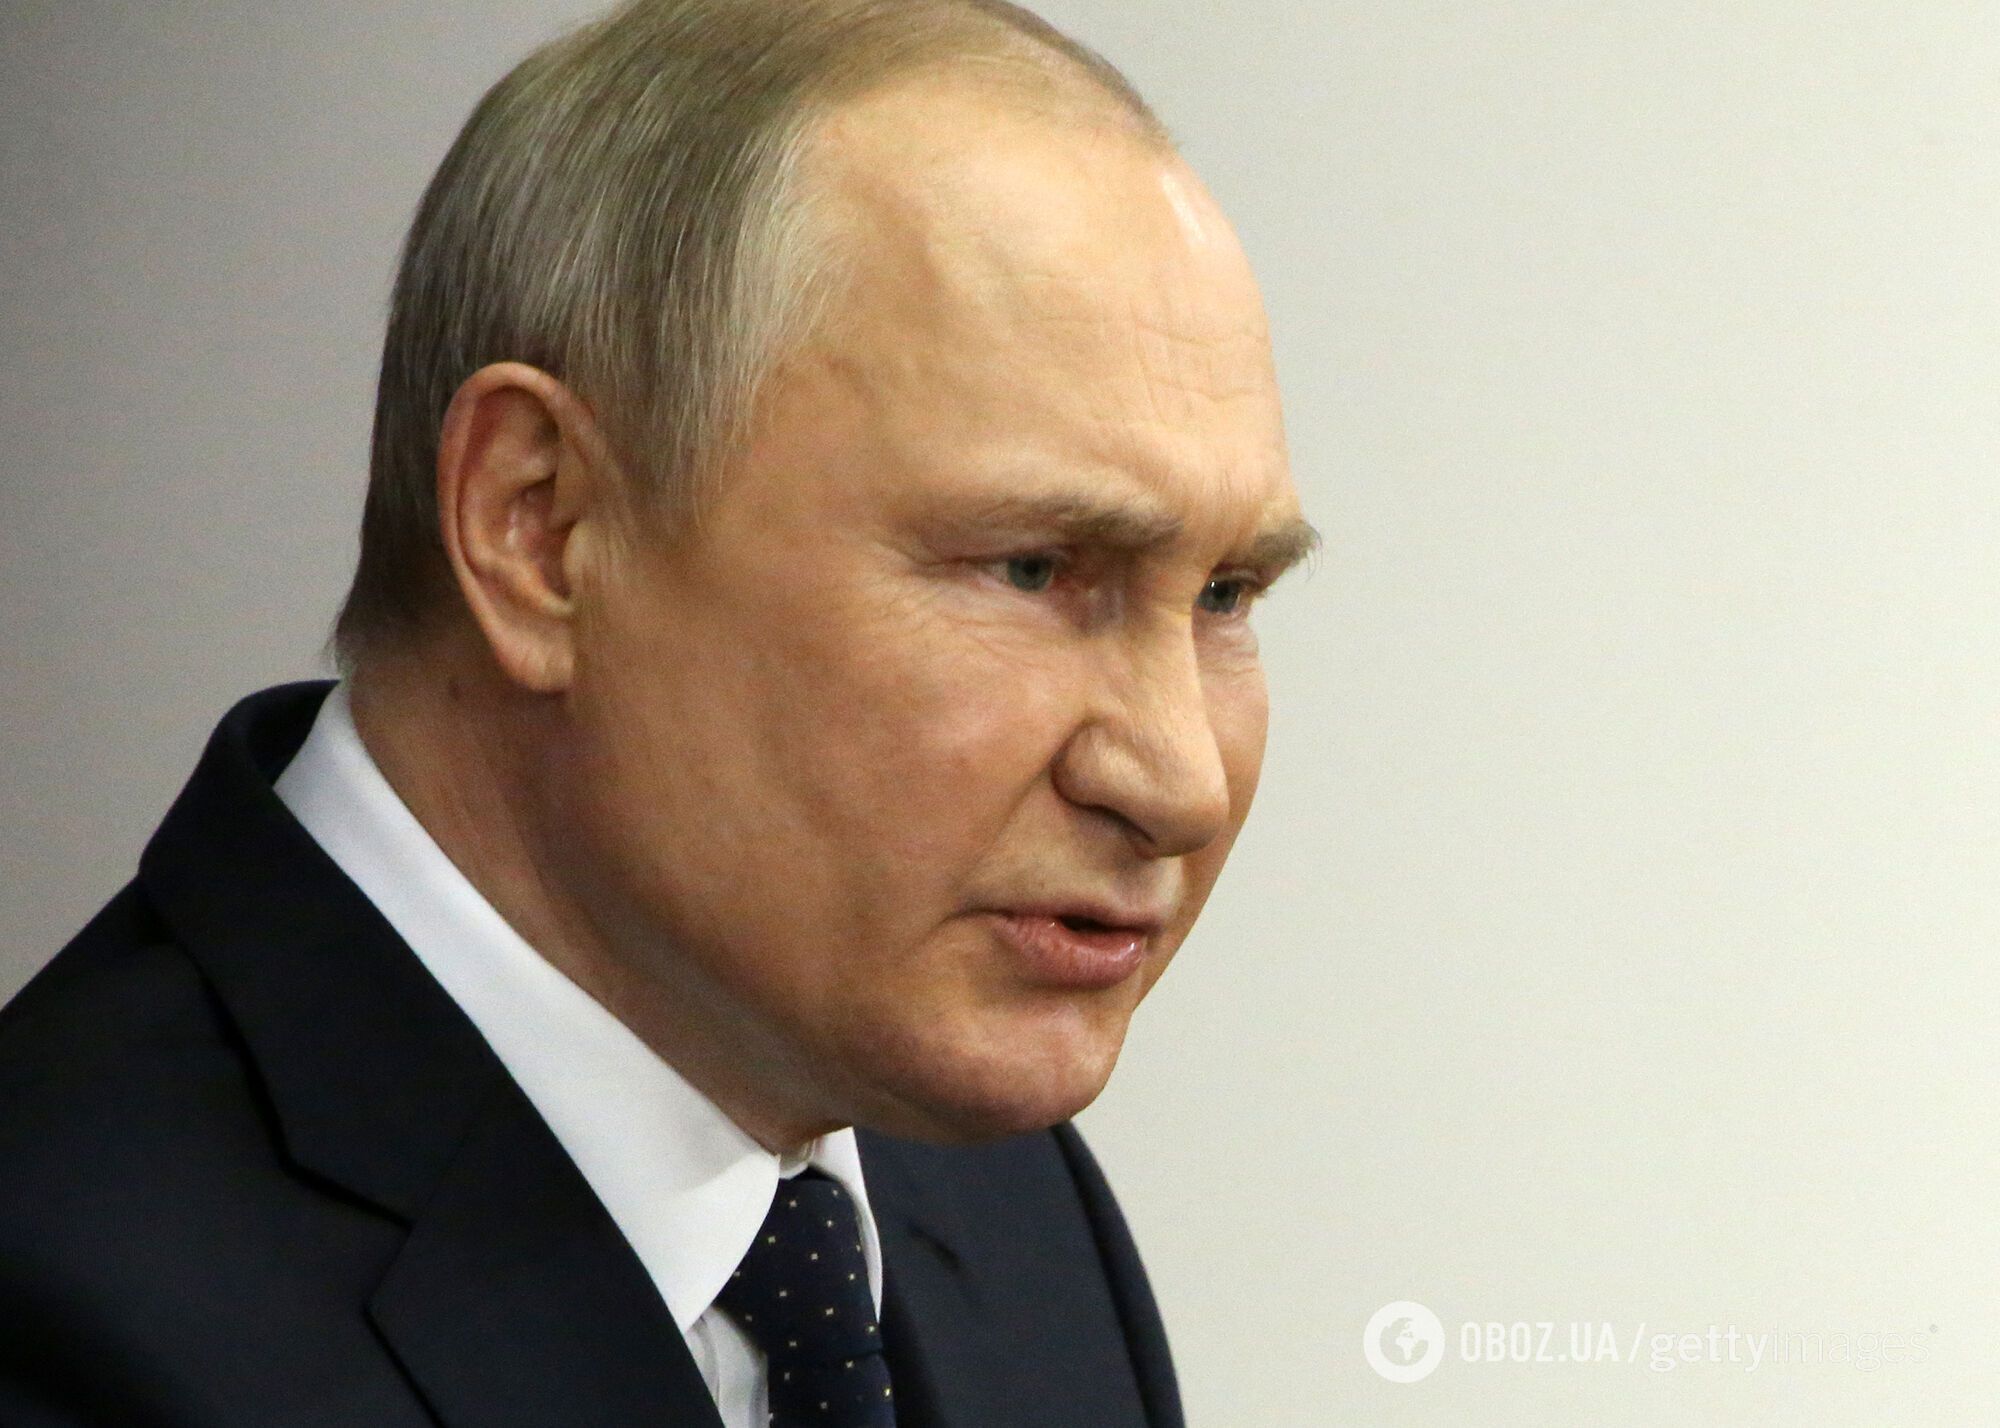 Акунин предполагает, что диктатор Путин переживает стадию "гнева"